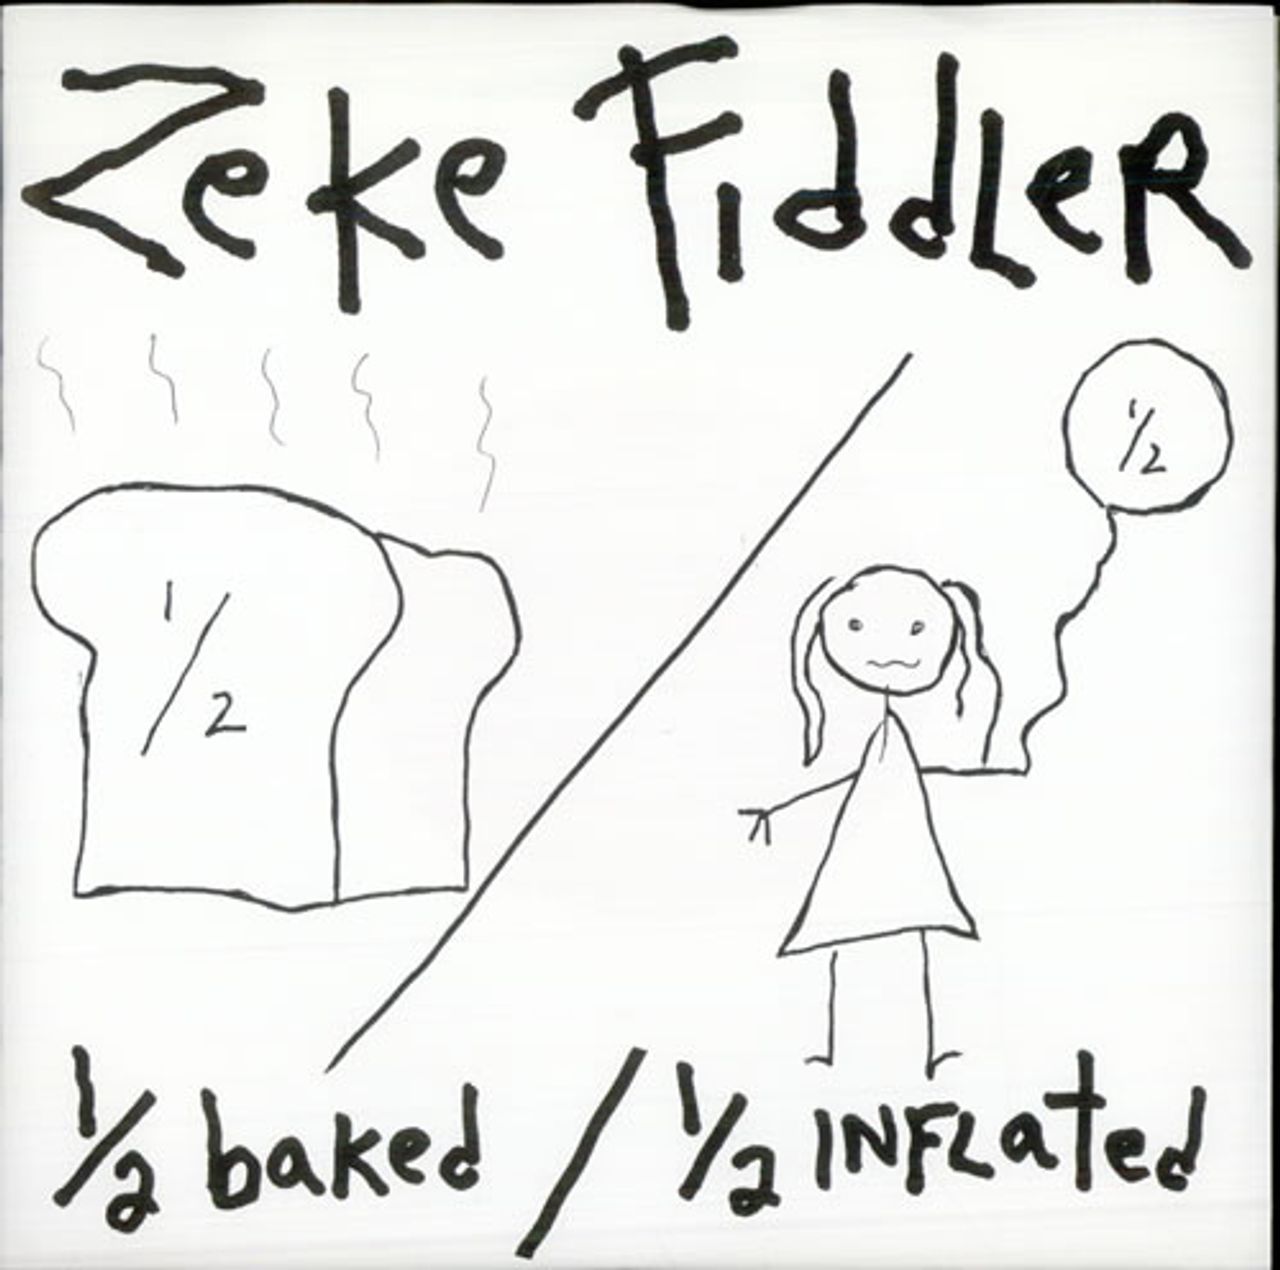 Zeke Fiddler